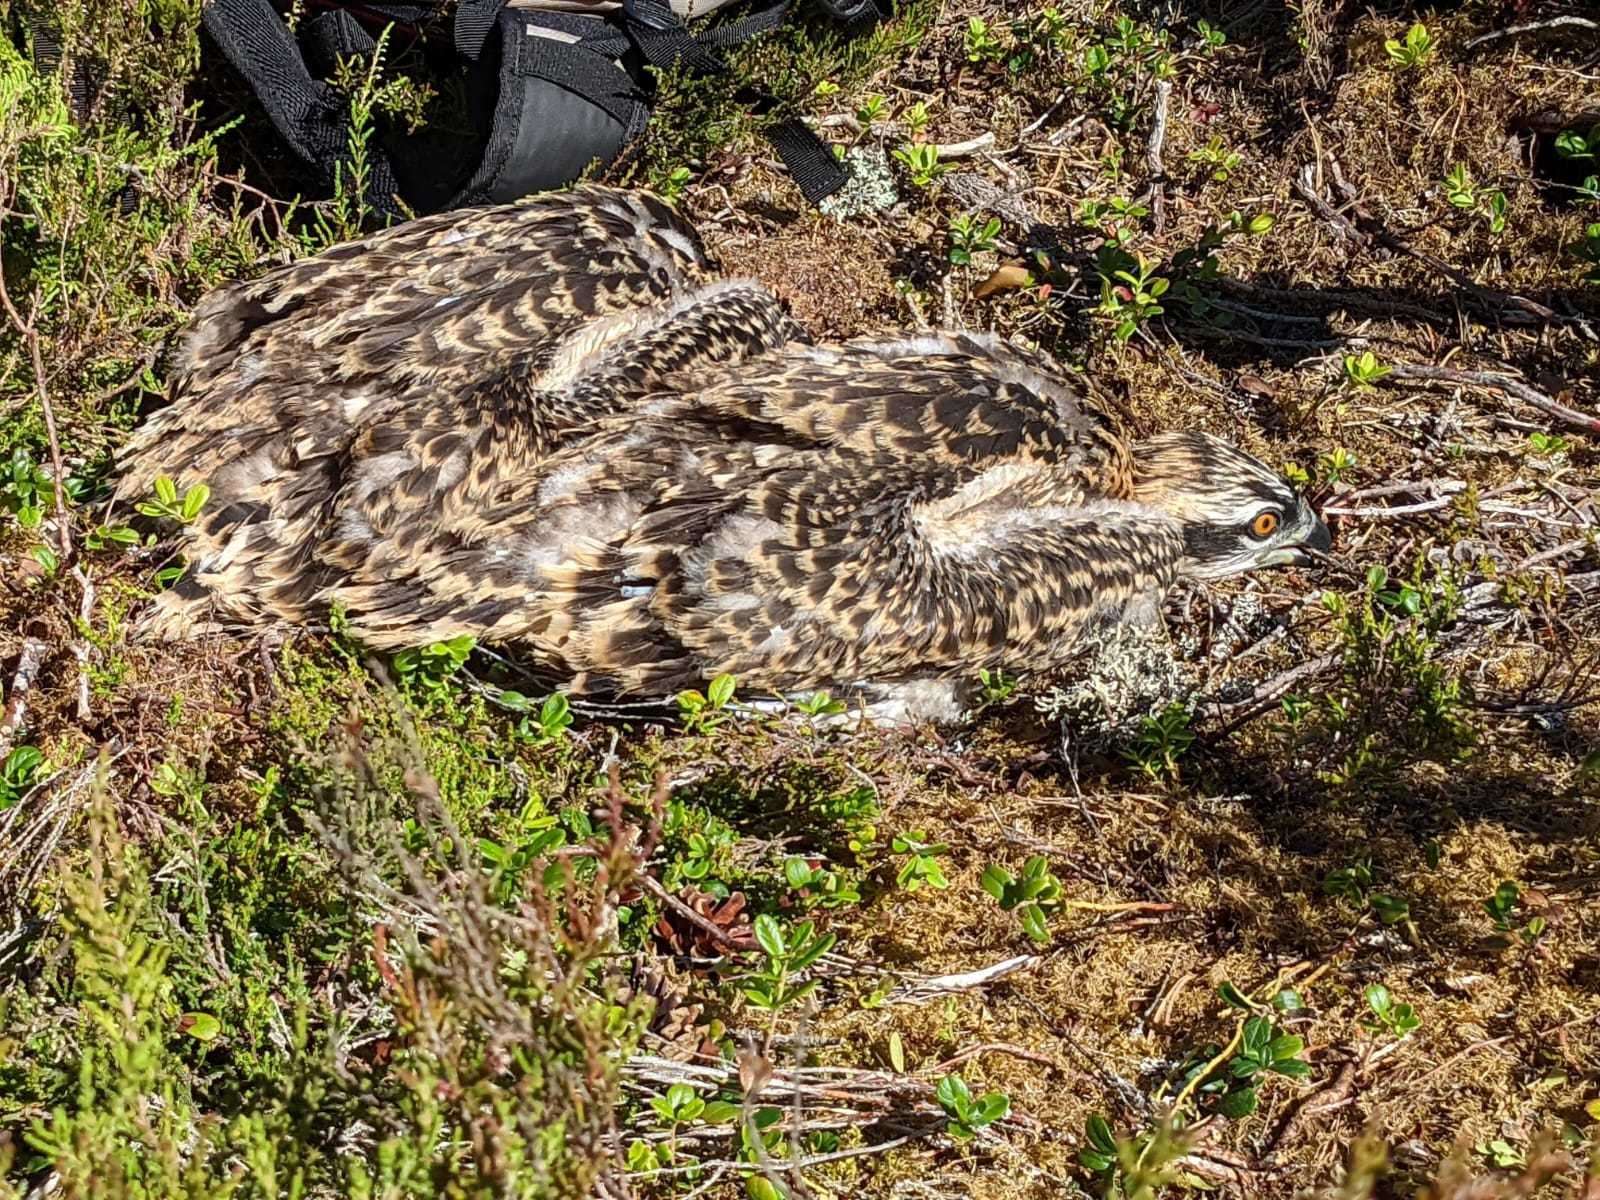 Both osprey chicks on ground prior to ringing. RSPB Scotland